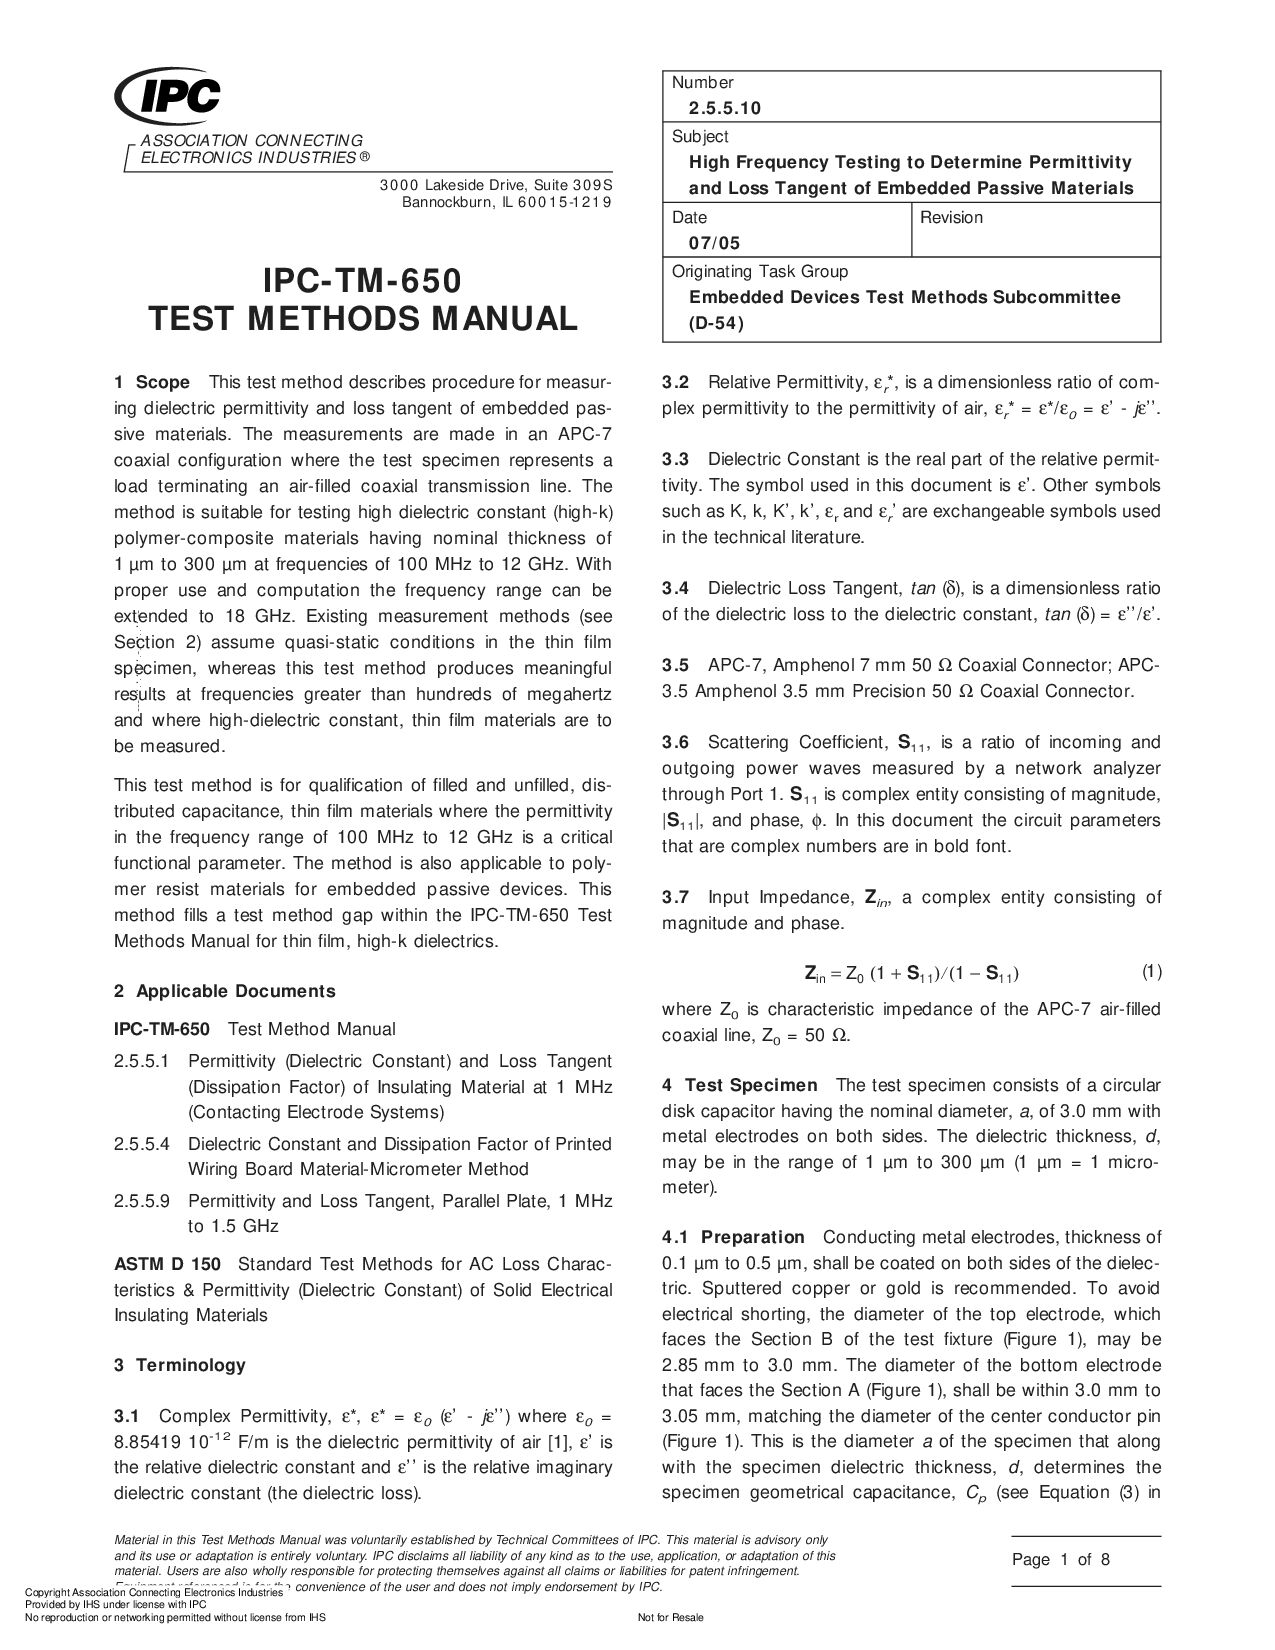 IPC TM-650 2.5.5.10-2005封面图